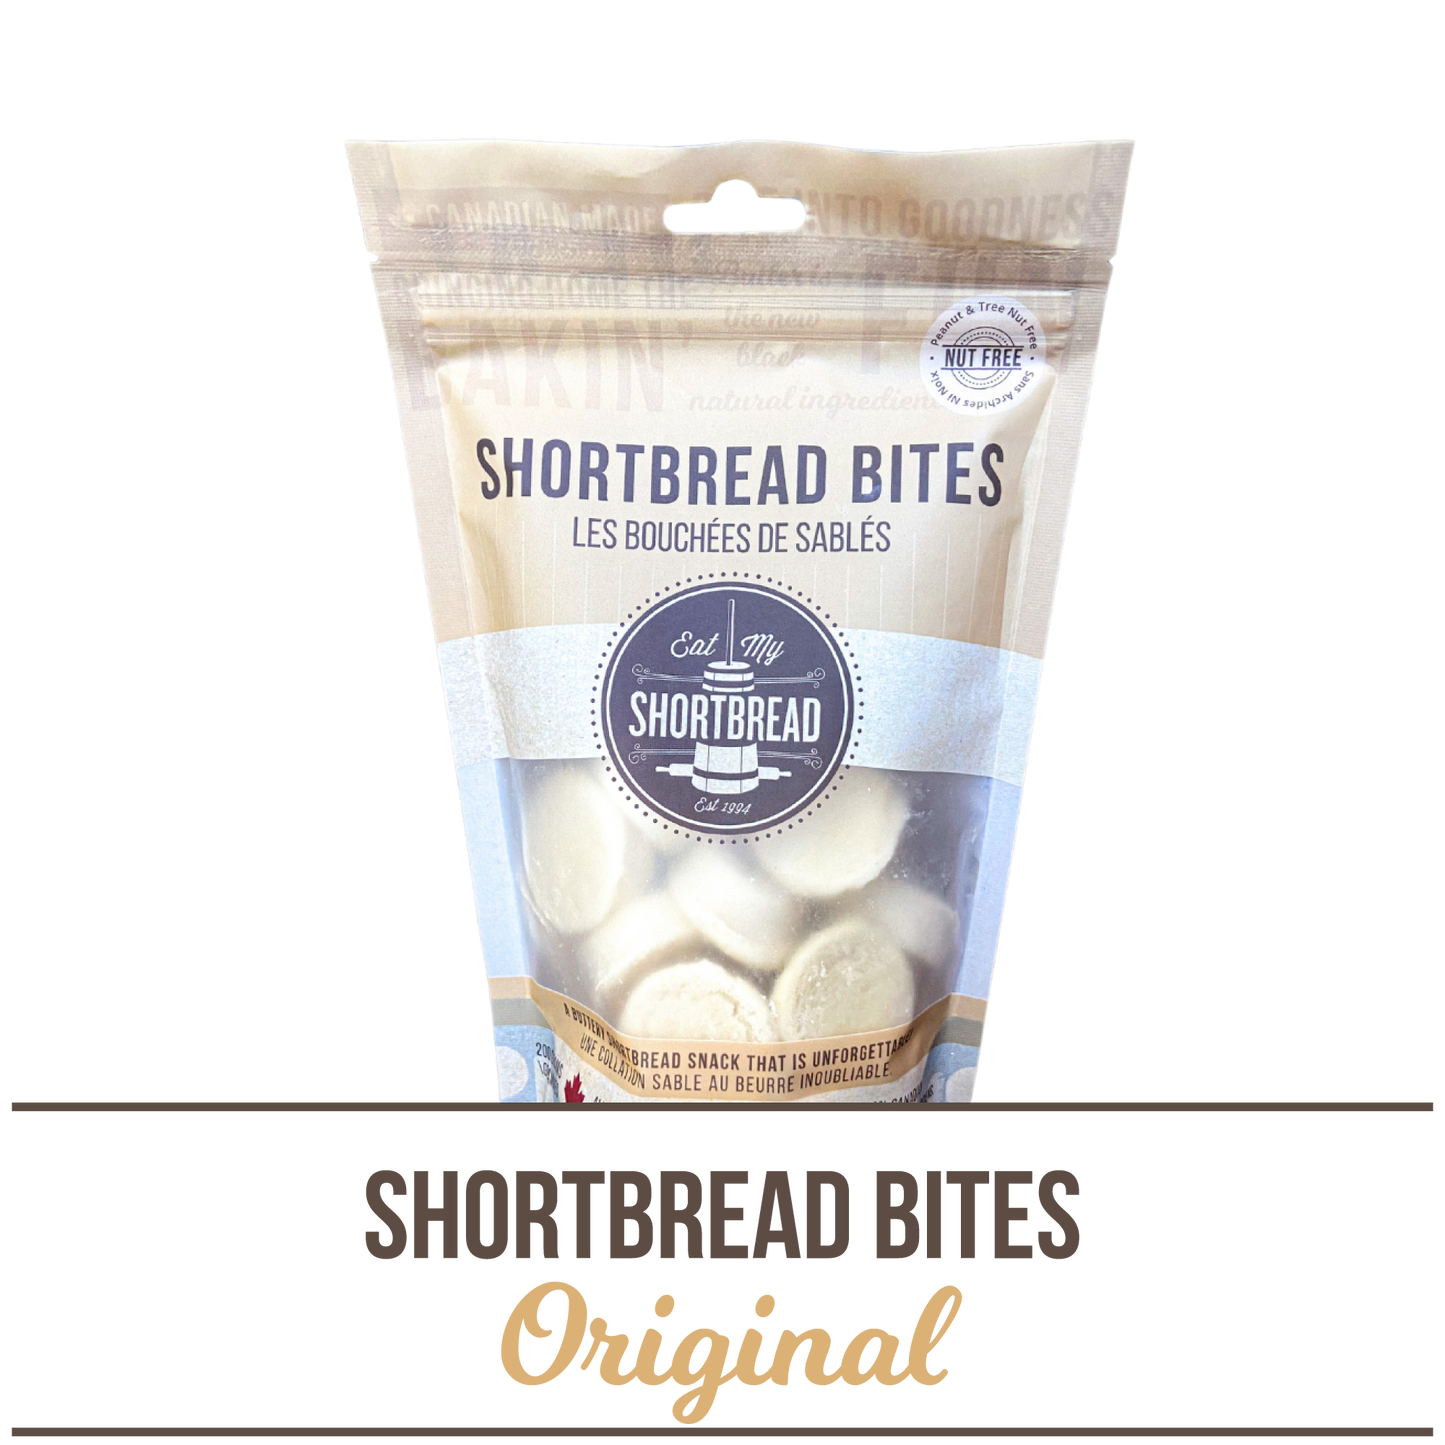 BITES Original Shortbread